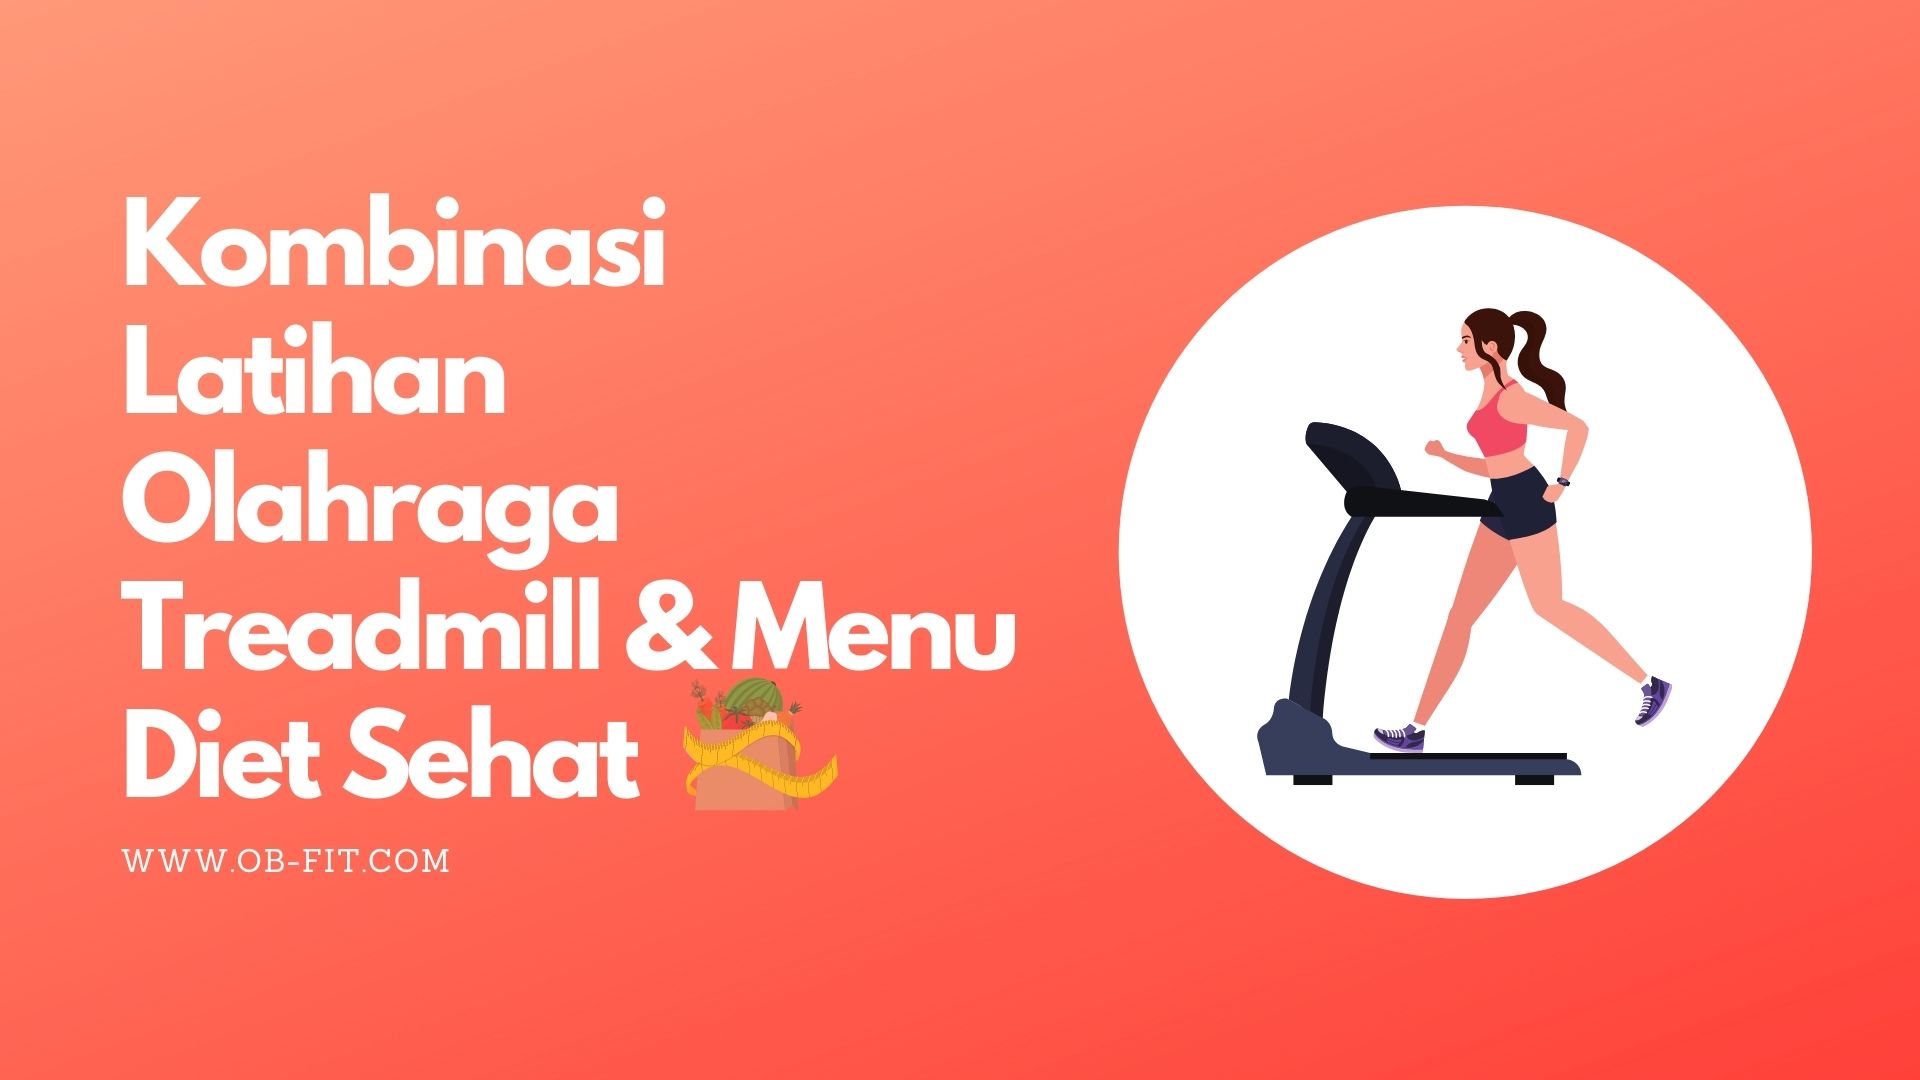 kombinasi-latihan-olahraga-treadmill--menu-diet-sehat-untuk-menurunkan-berat-badan